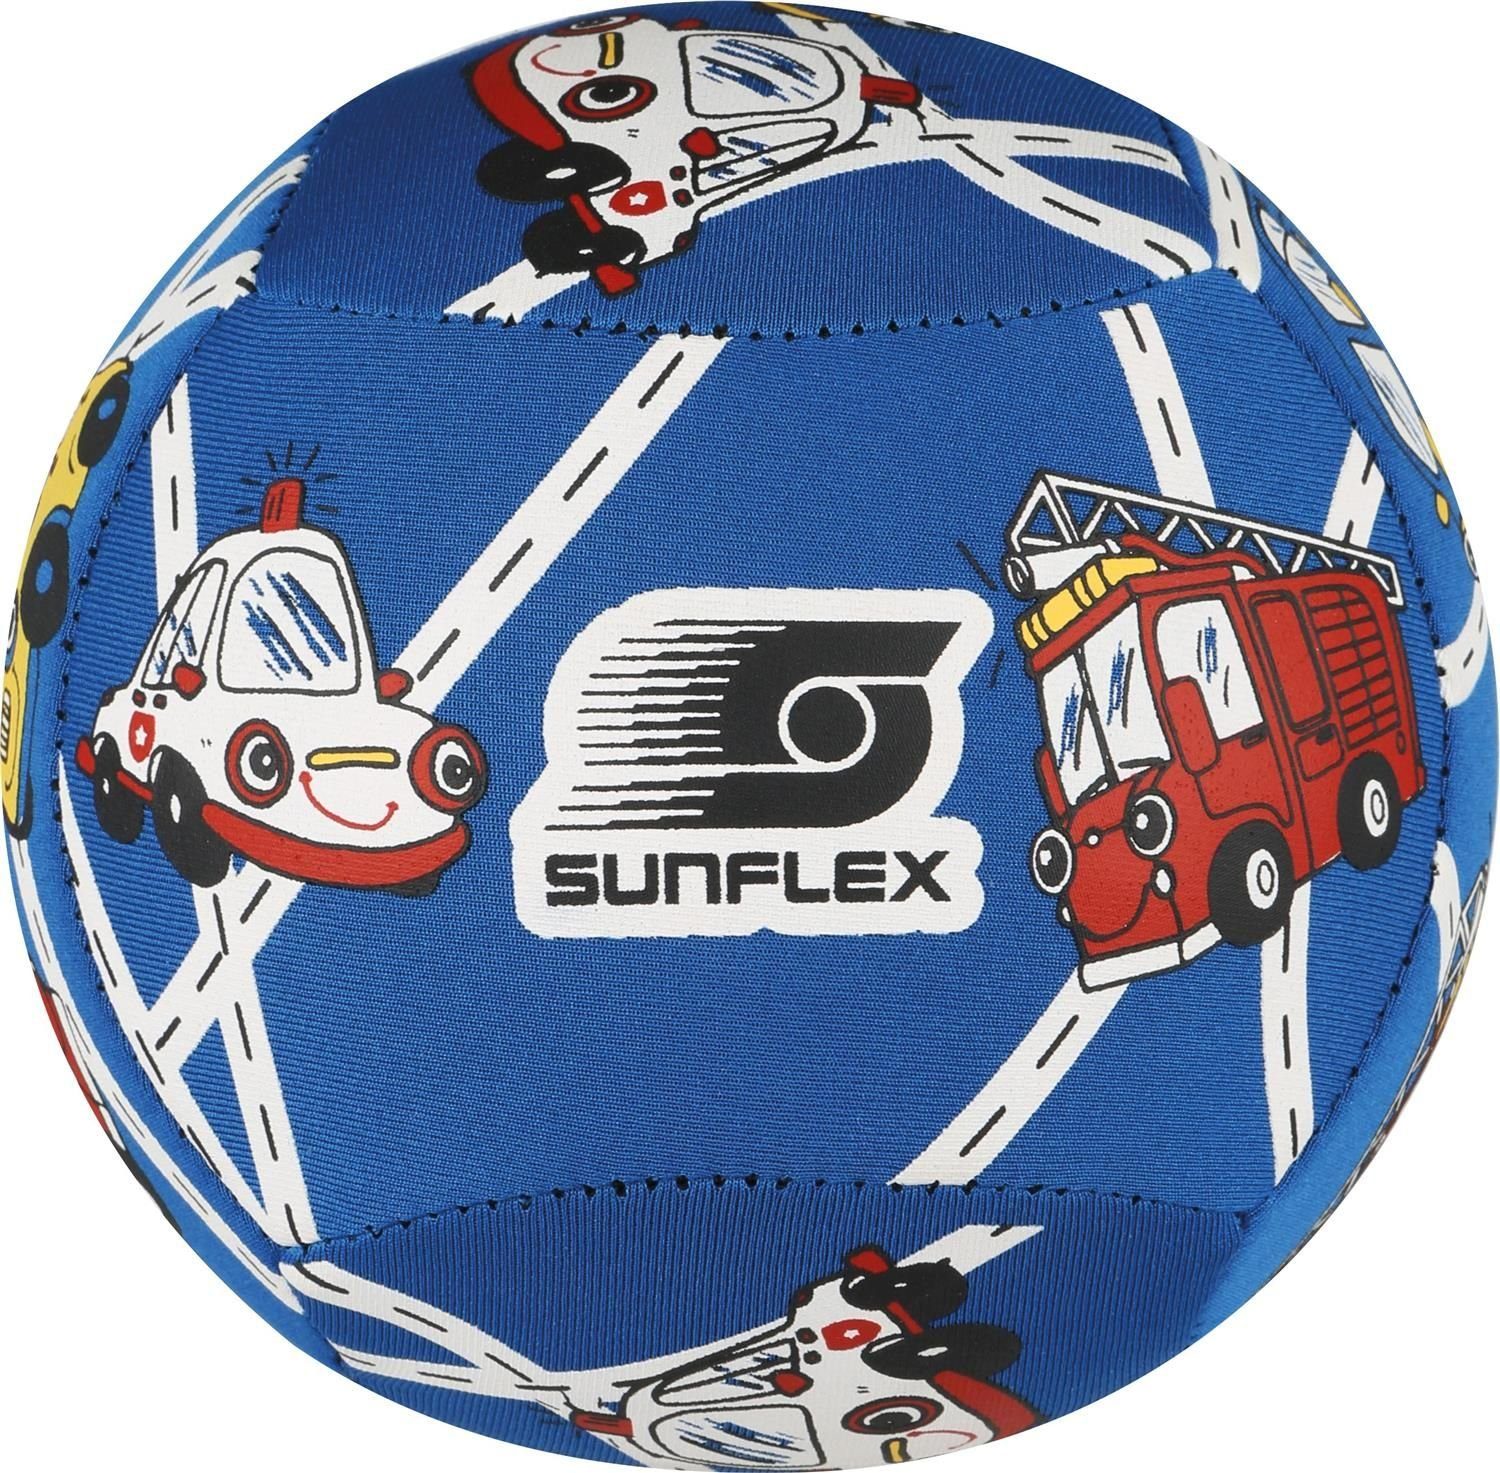 Sunflex Softball Neoprenball Größe Strandball Cars, 2 Softball Funball Youngster Beachball Ball Kindgerecht Wasserball